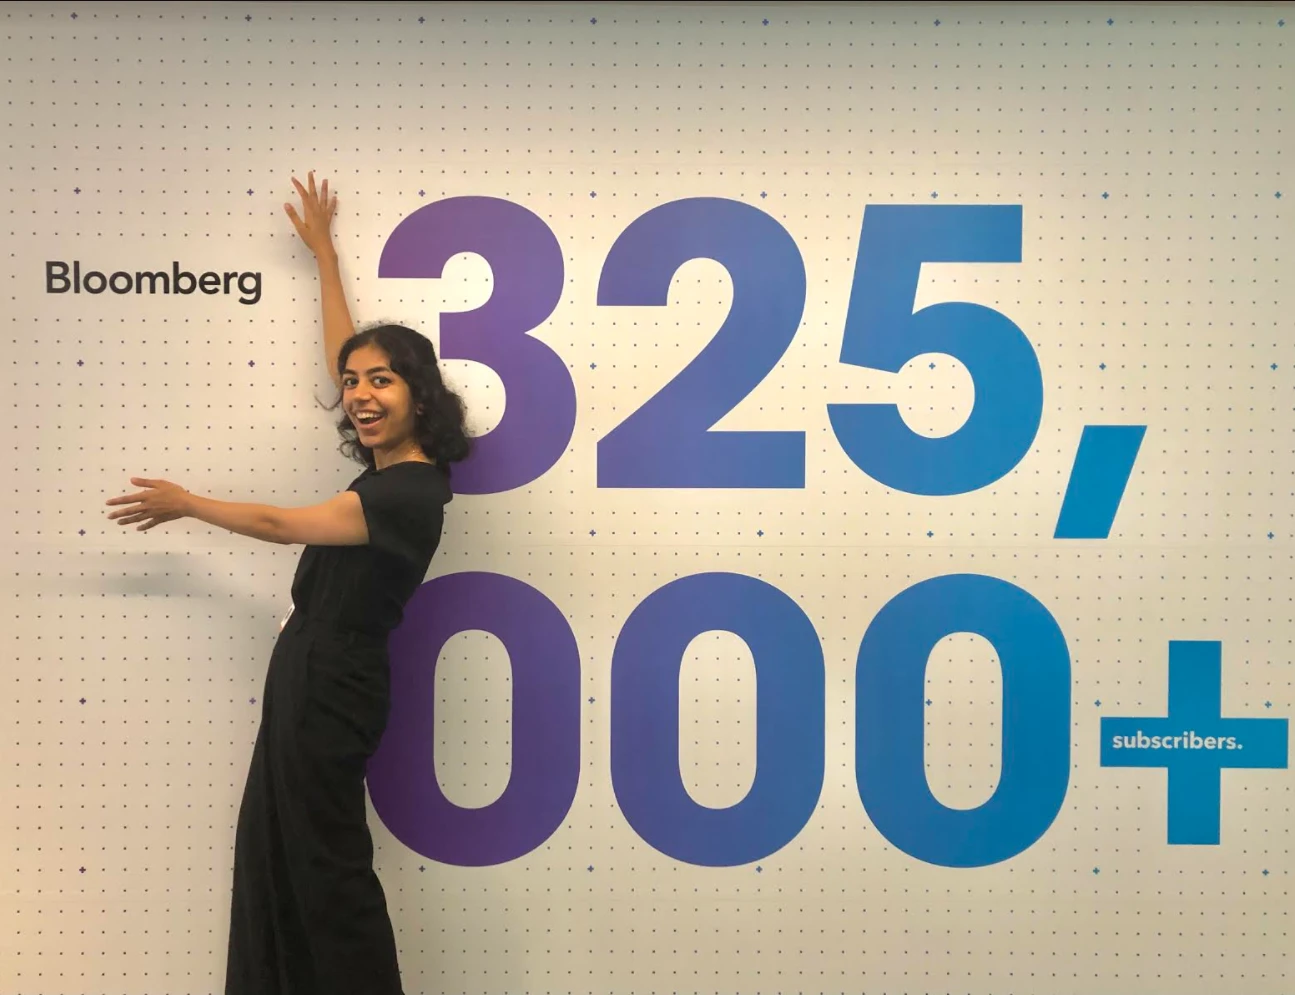 Shreya Jadhav pays a visit to Bloomberg's office in Tokyo